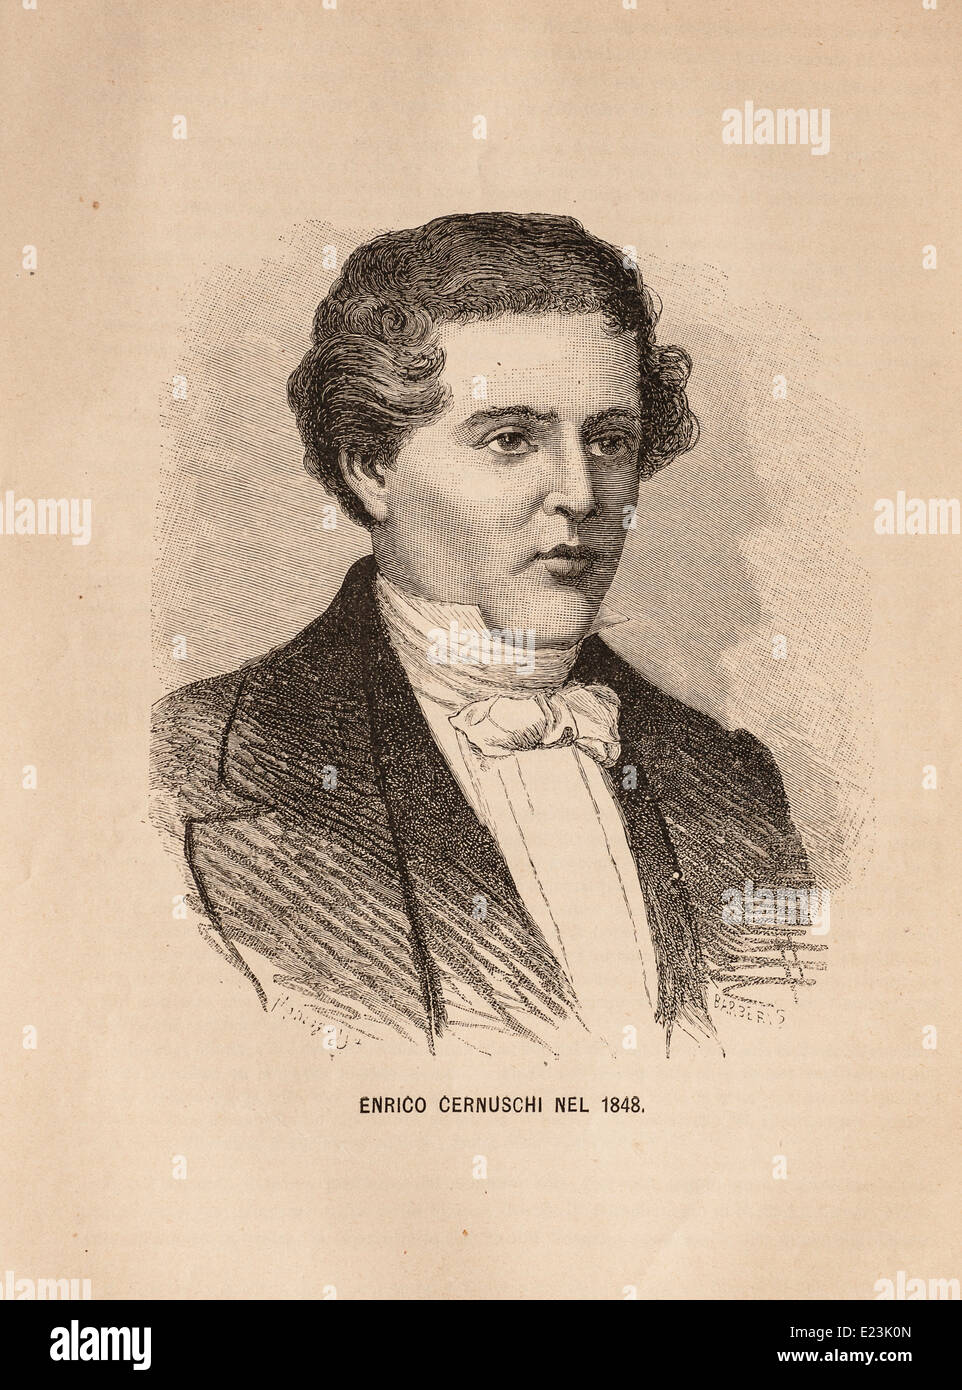 Giuseppe Mazzini du livre de Jessie W. Mario de vie de Mazzini Portrait d'Enrico Cernusch en 1848, Banque D'Images